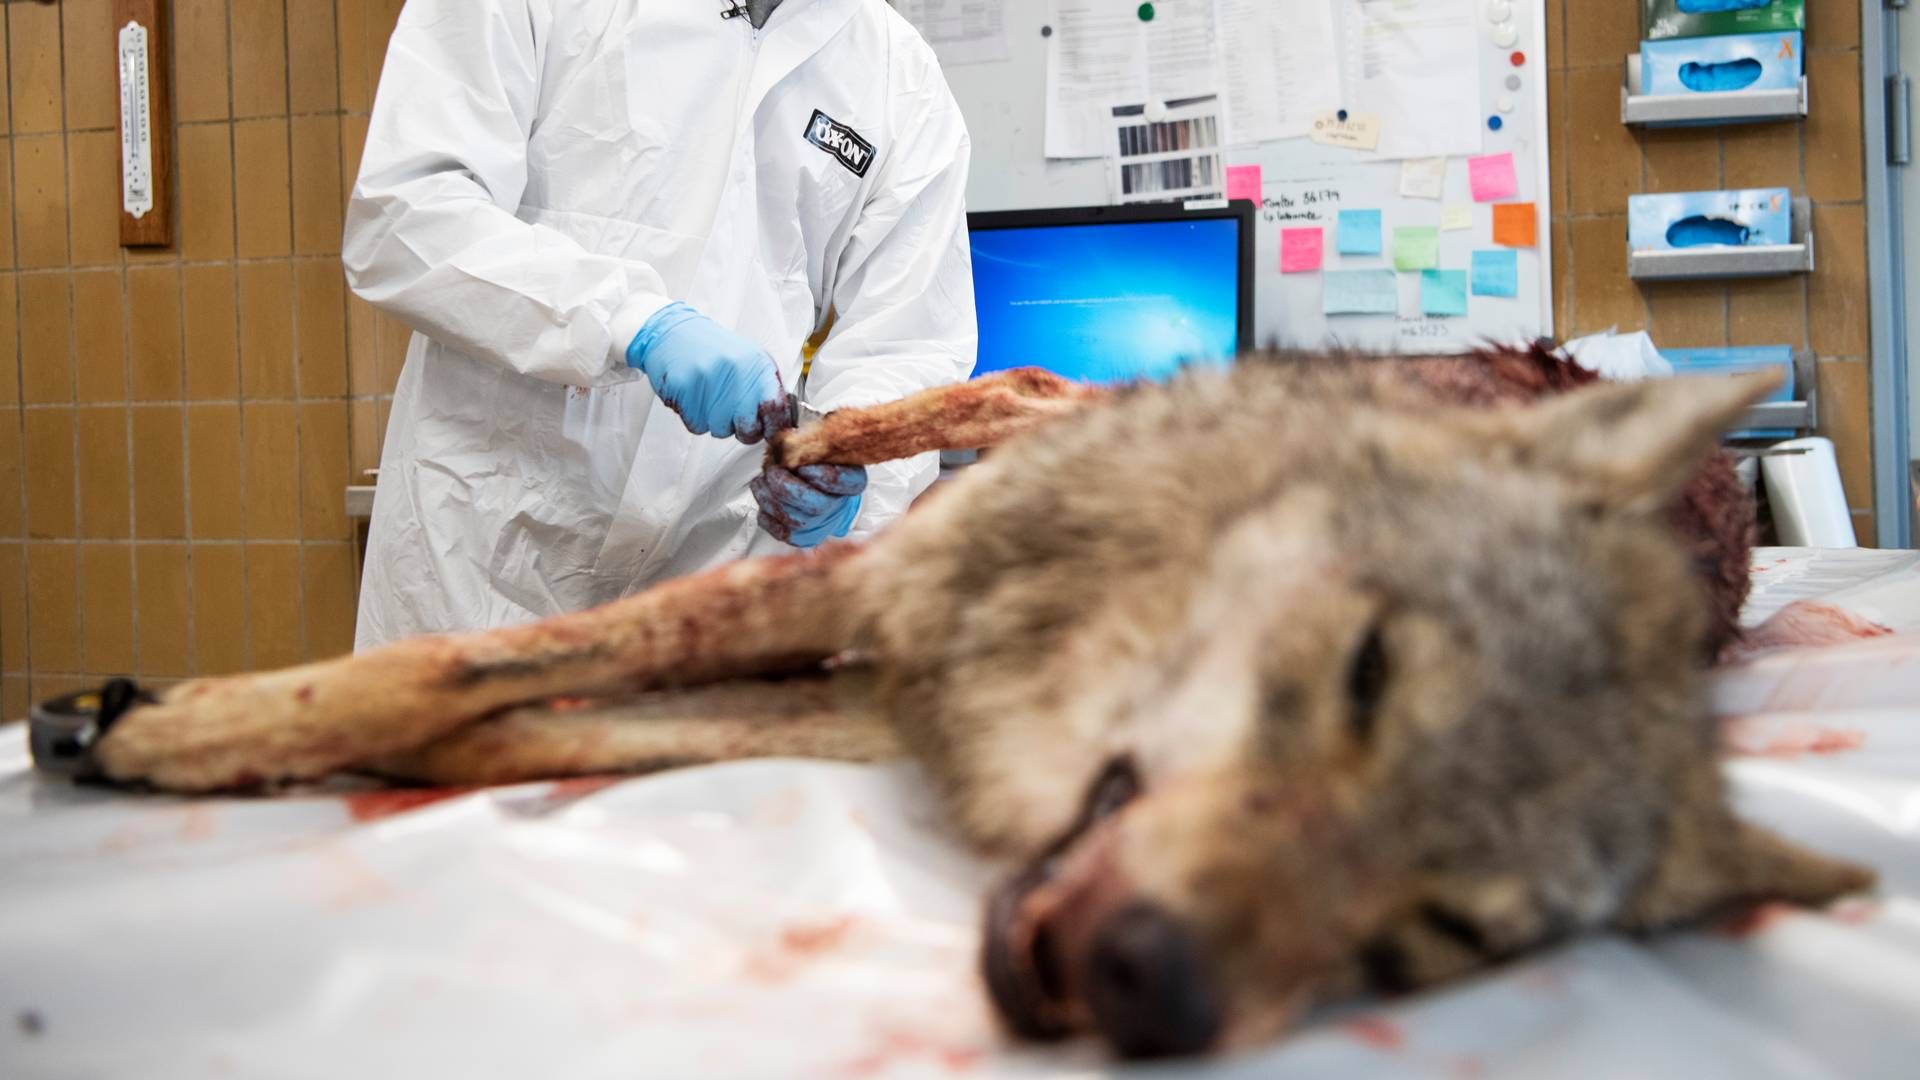 Ulvebestanden i Europa er næsten fordoblet på ti år. Herhjemme ønsker flere landmænd at få lov til at skyde ulve, som risikerer at slå deres dyr ihjel. | Foto: Gregers Tycho